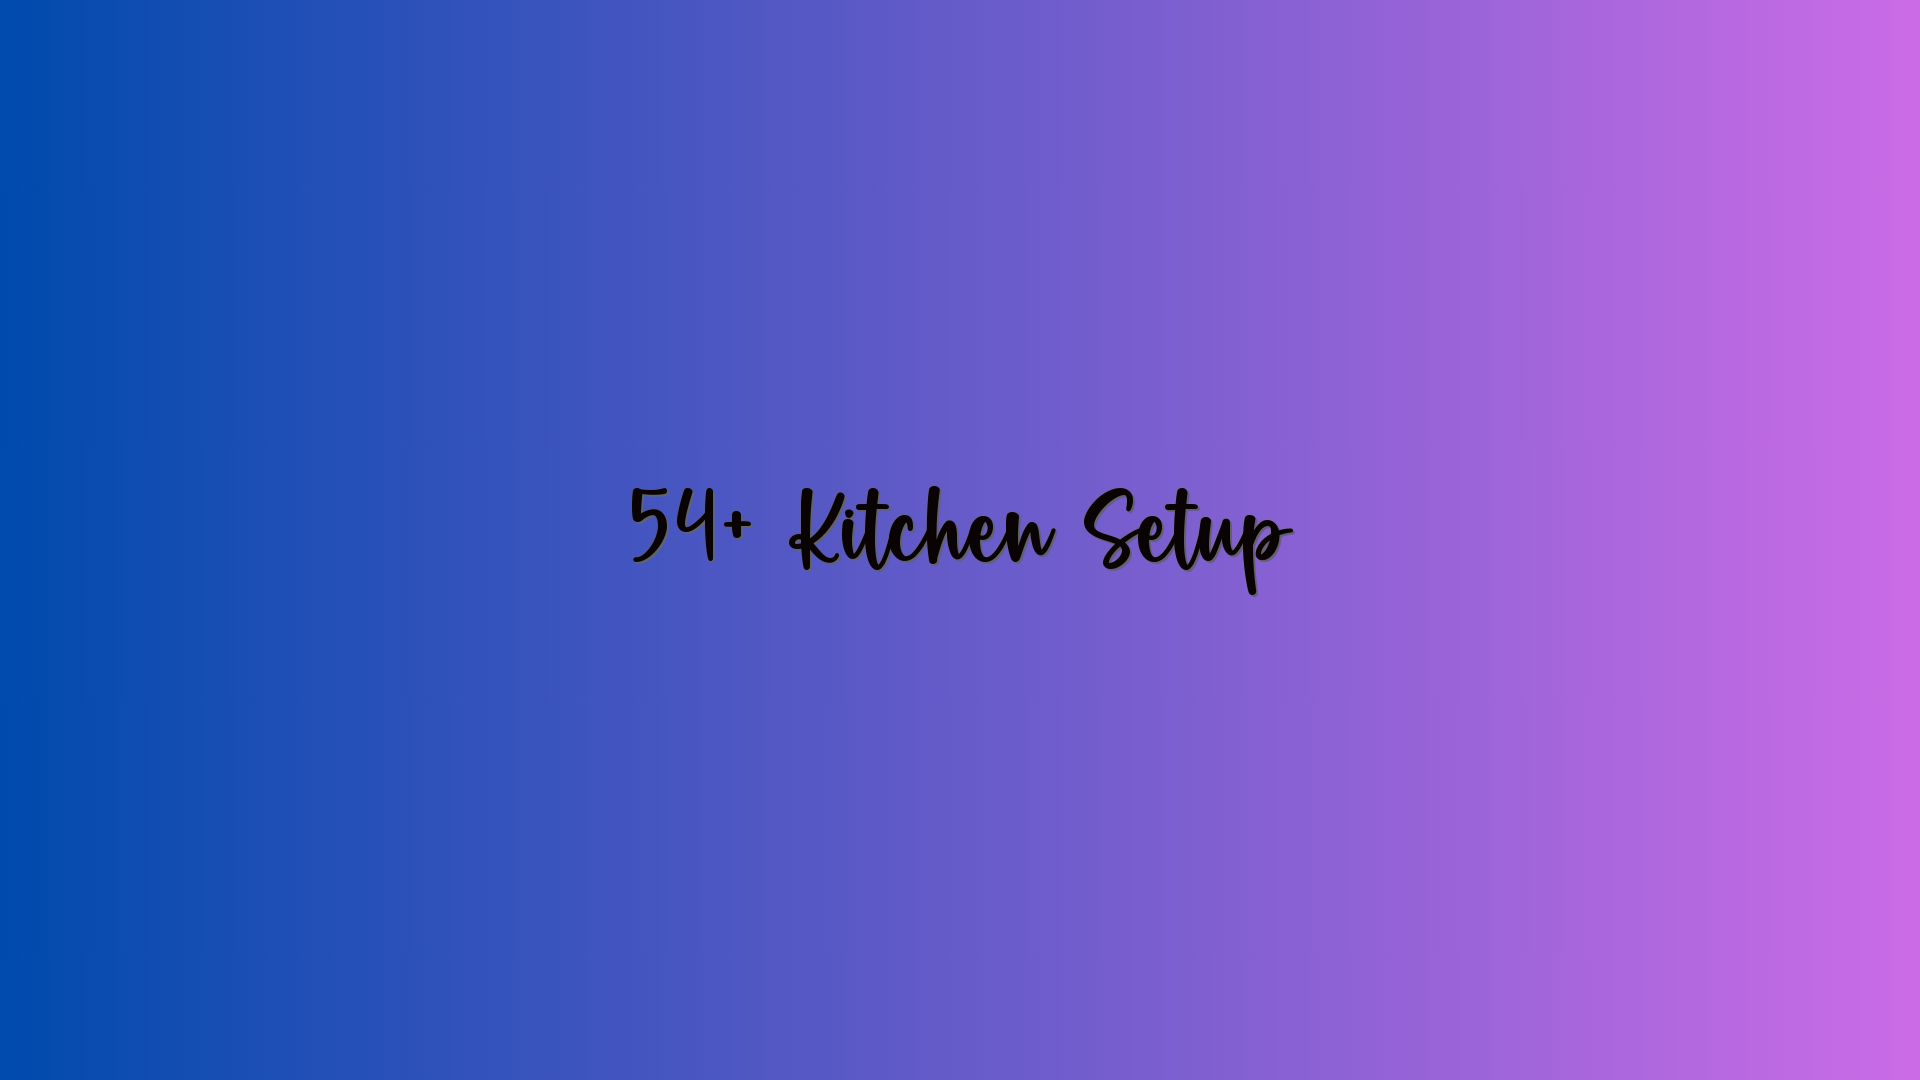 54+ Kitchen Setup